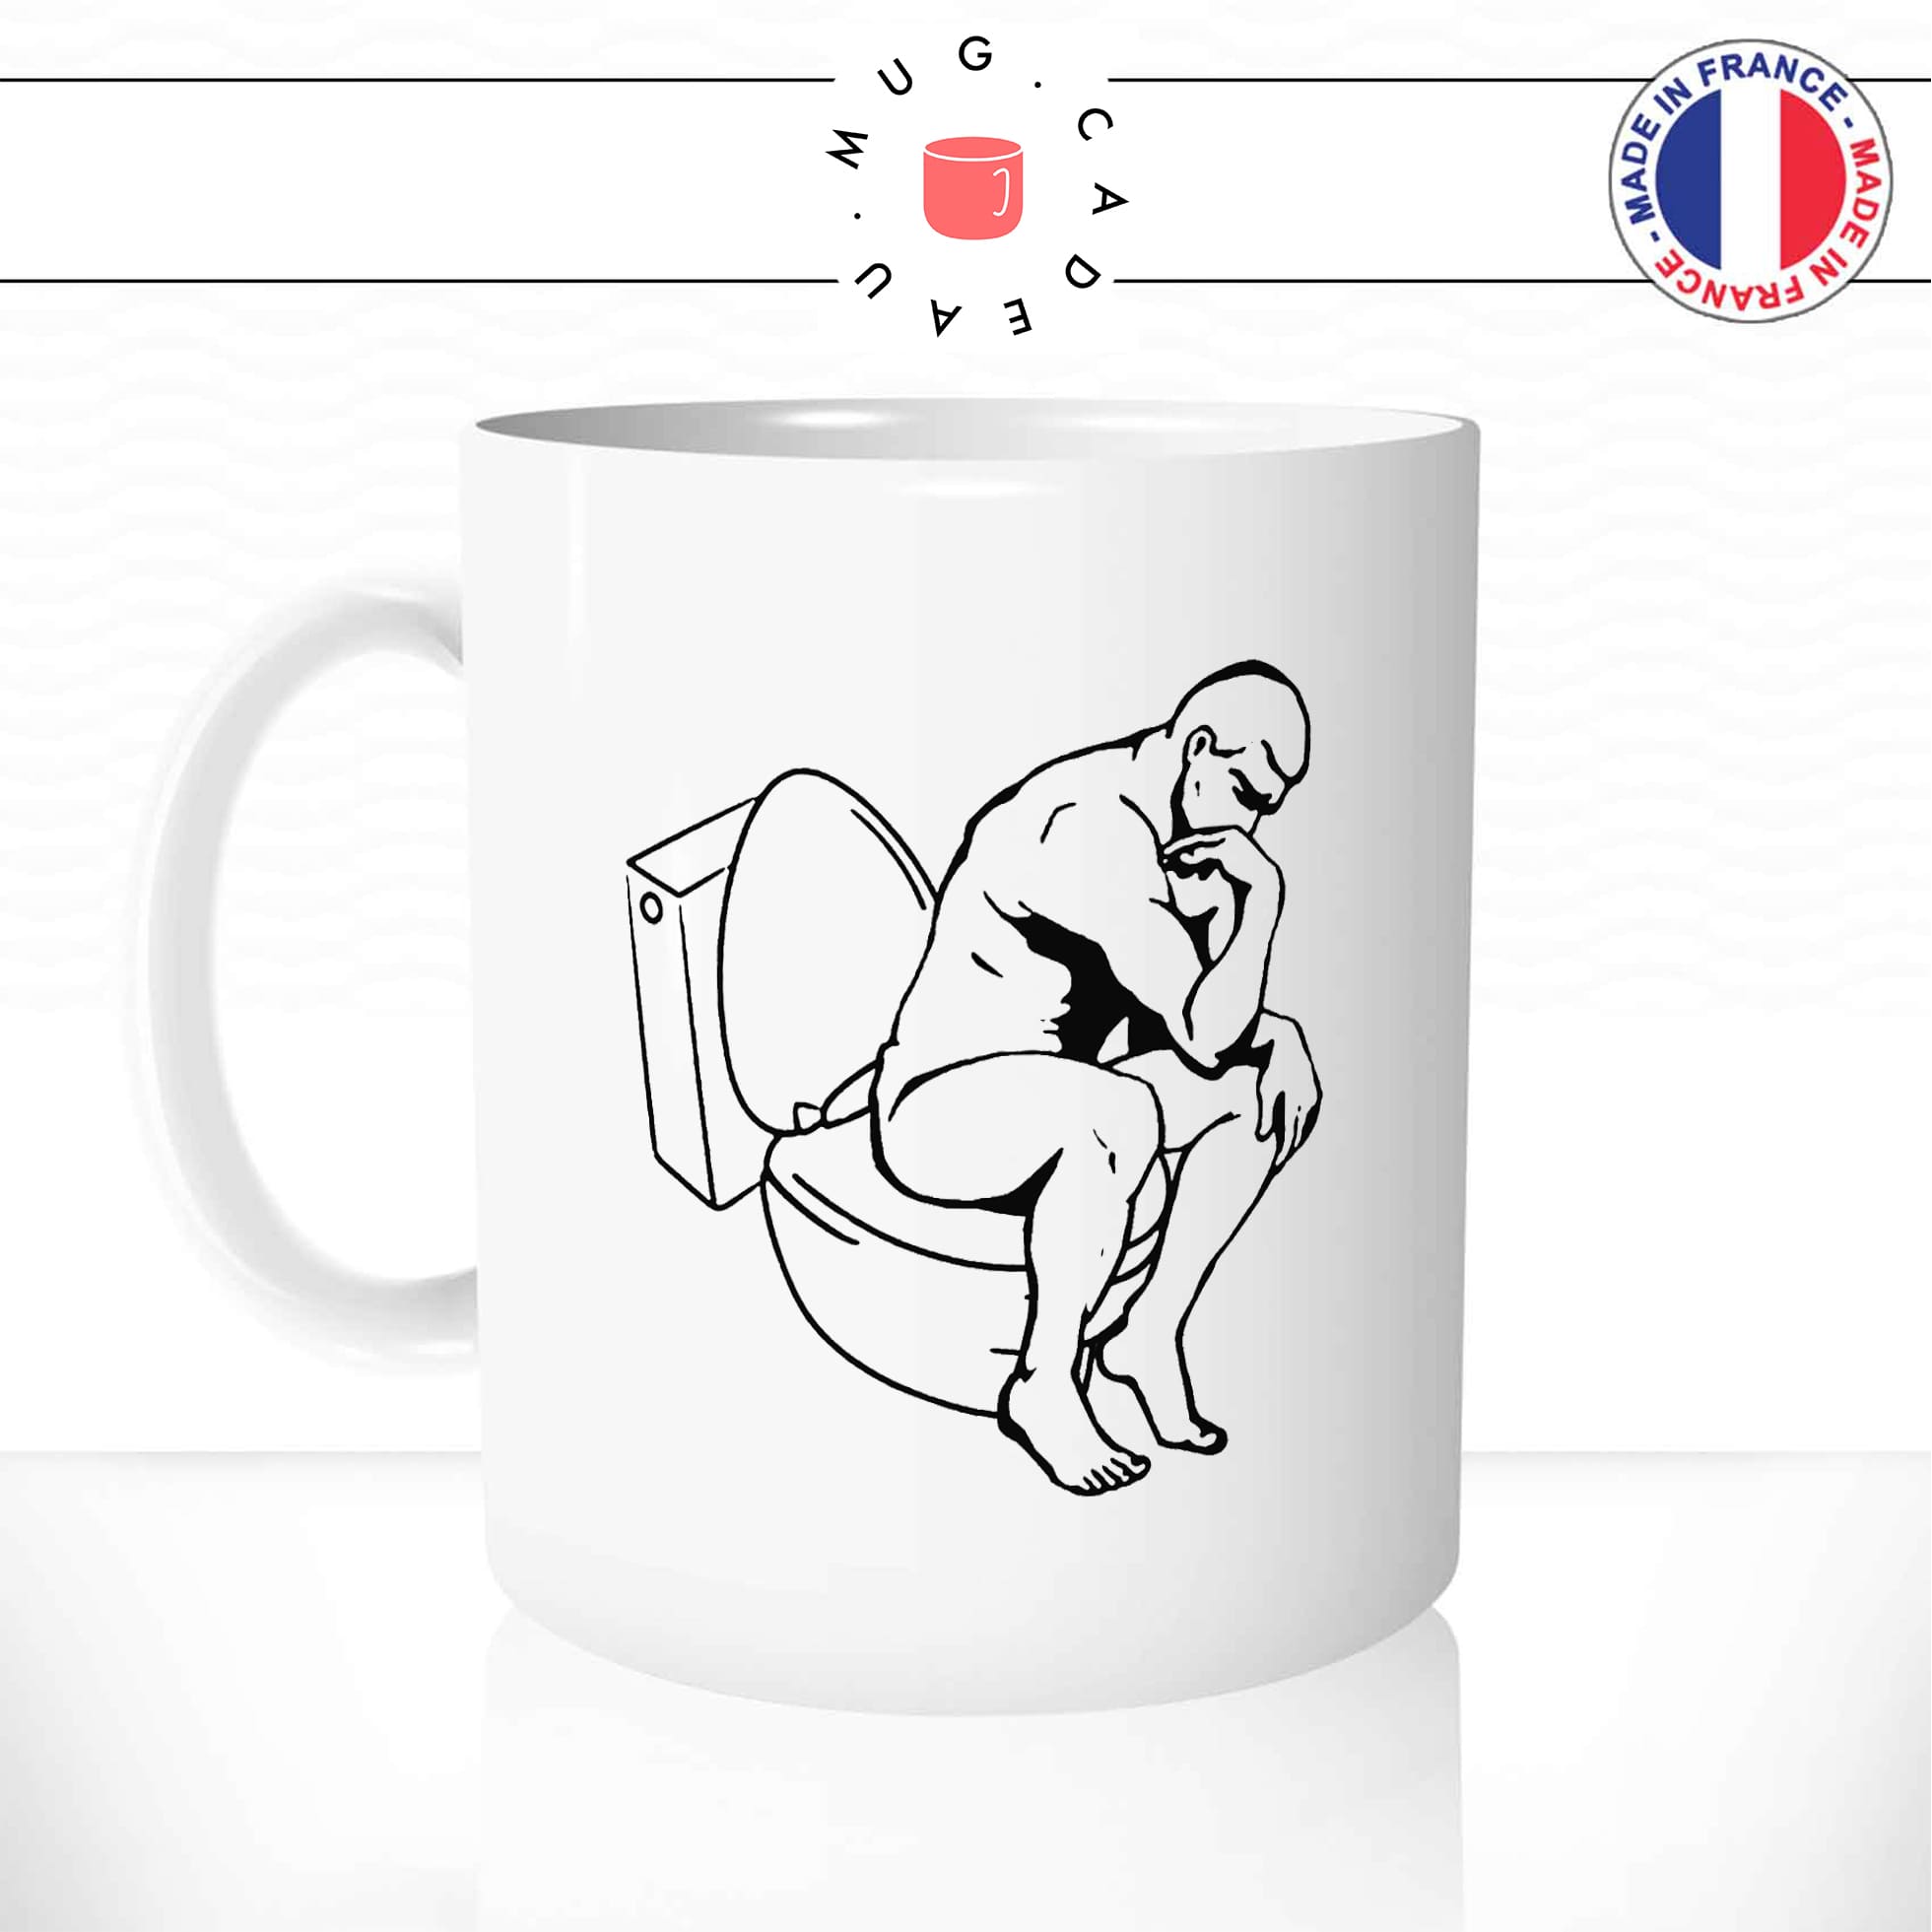 mug-tasse-blanc-le-penseur-de-rodin-aux-toilettes-sculpture-art-parodie-homme-humour-fun-idée-cadeau-originale-cool